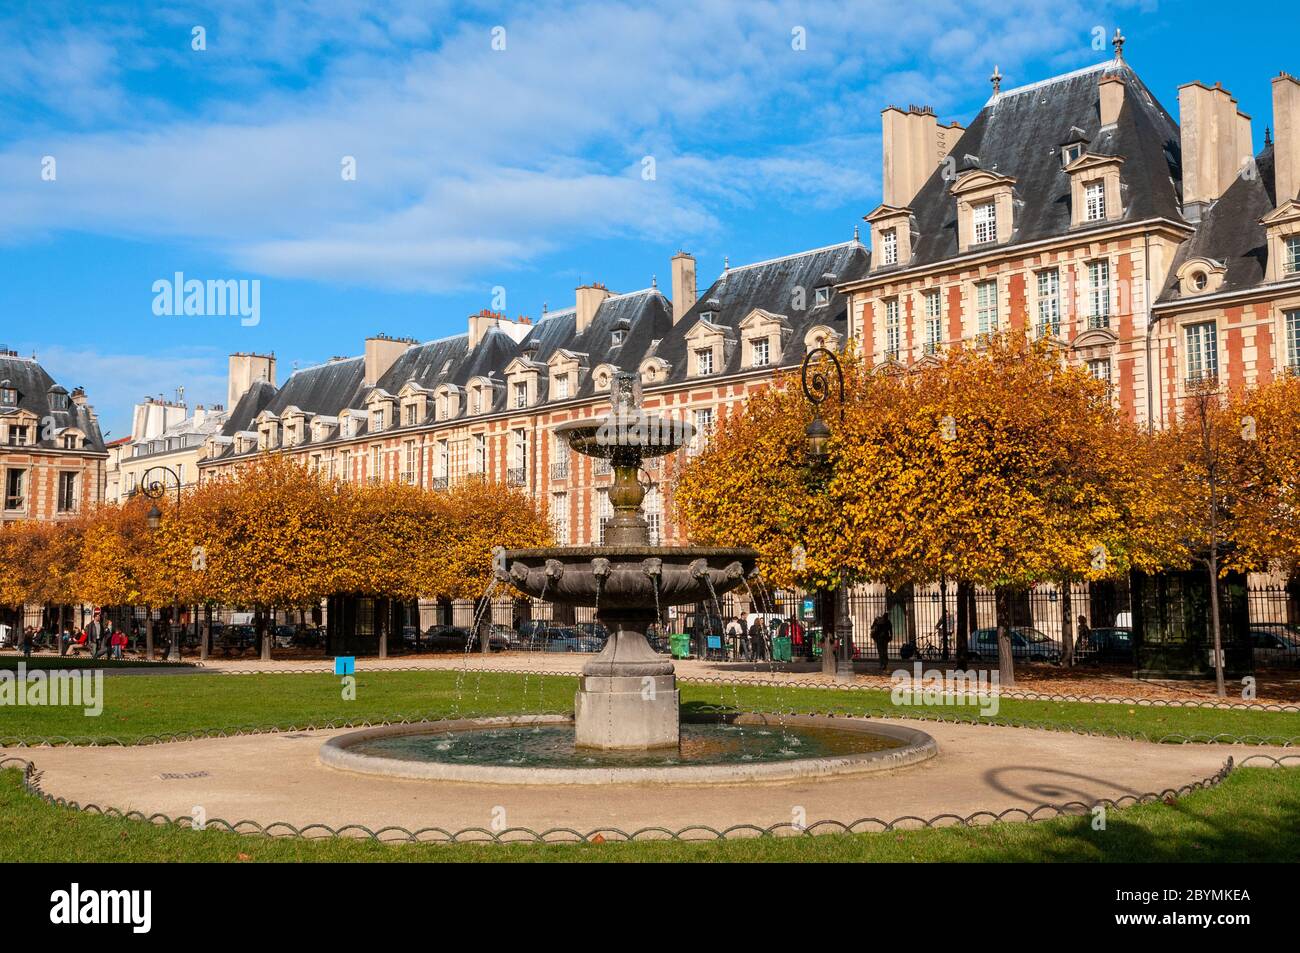 Fountain in Place des Vosges, Le Marais, Paris, France Stock Photo